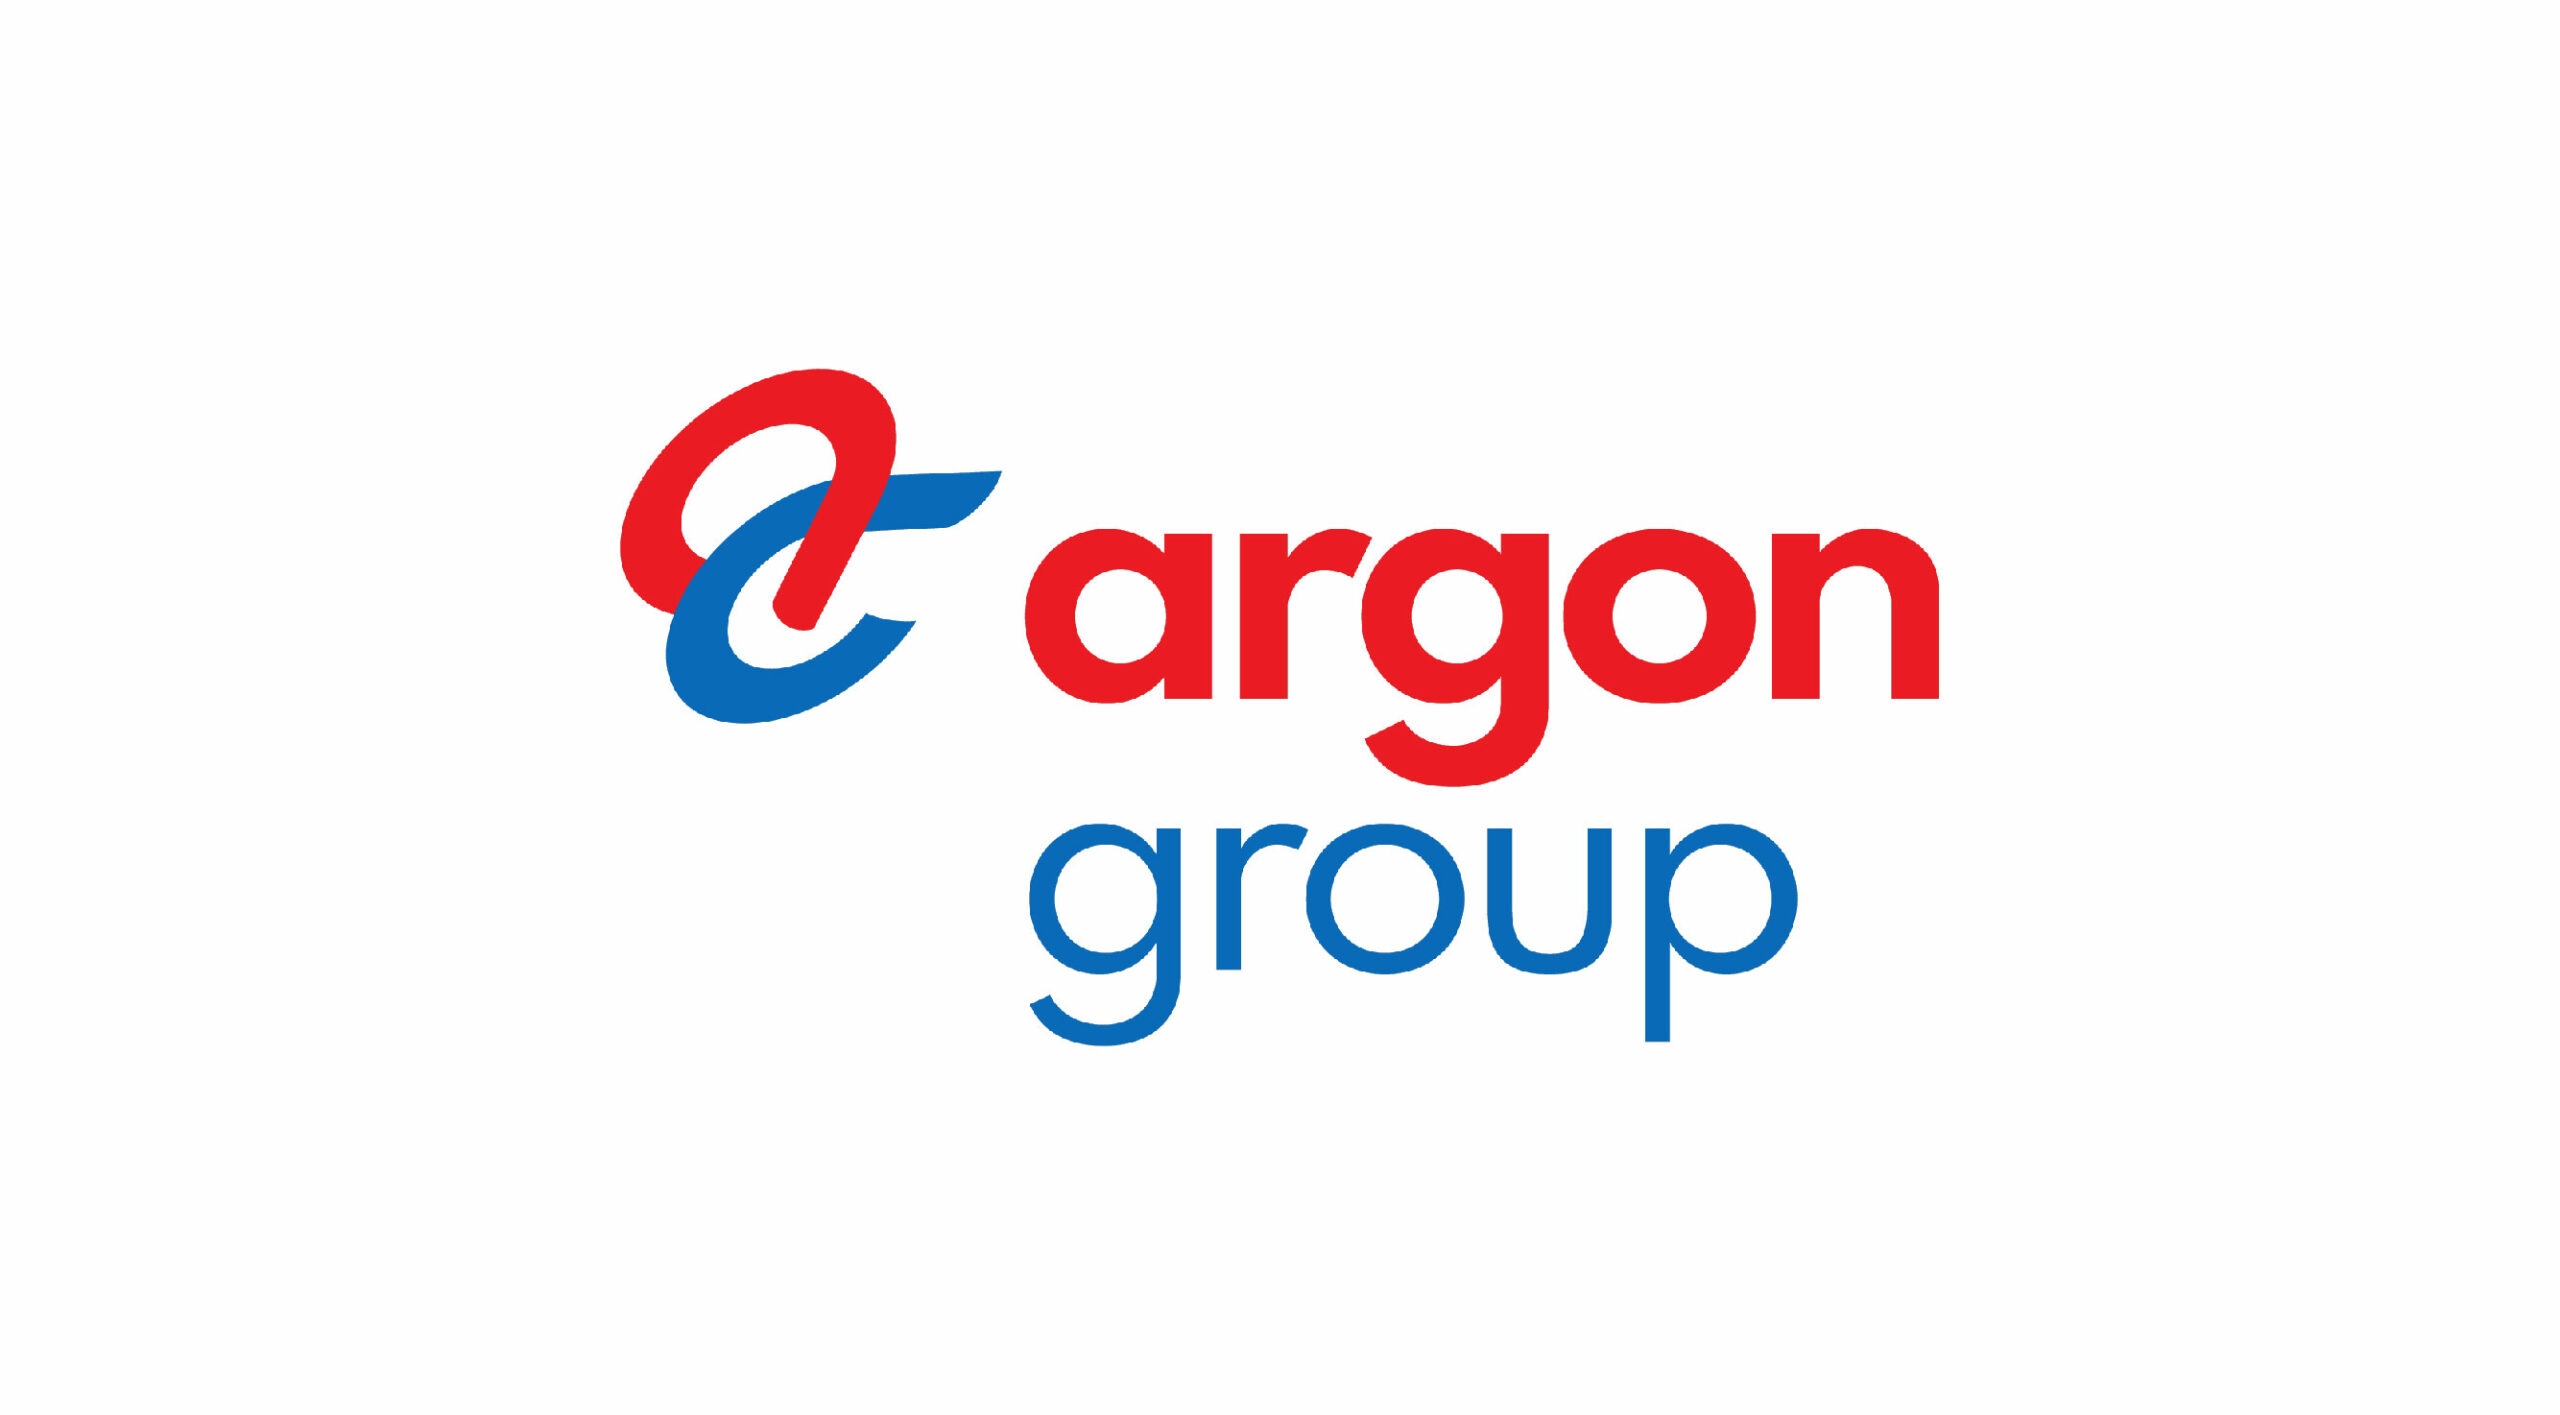 Lowongan Kerja Argon Group